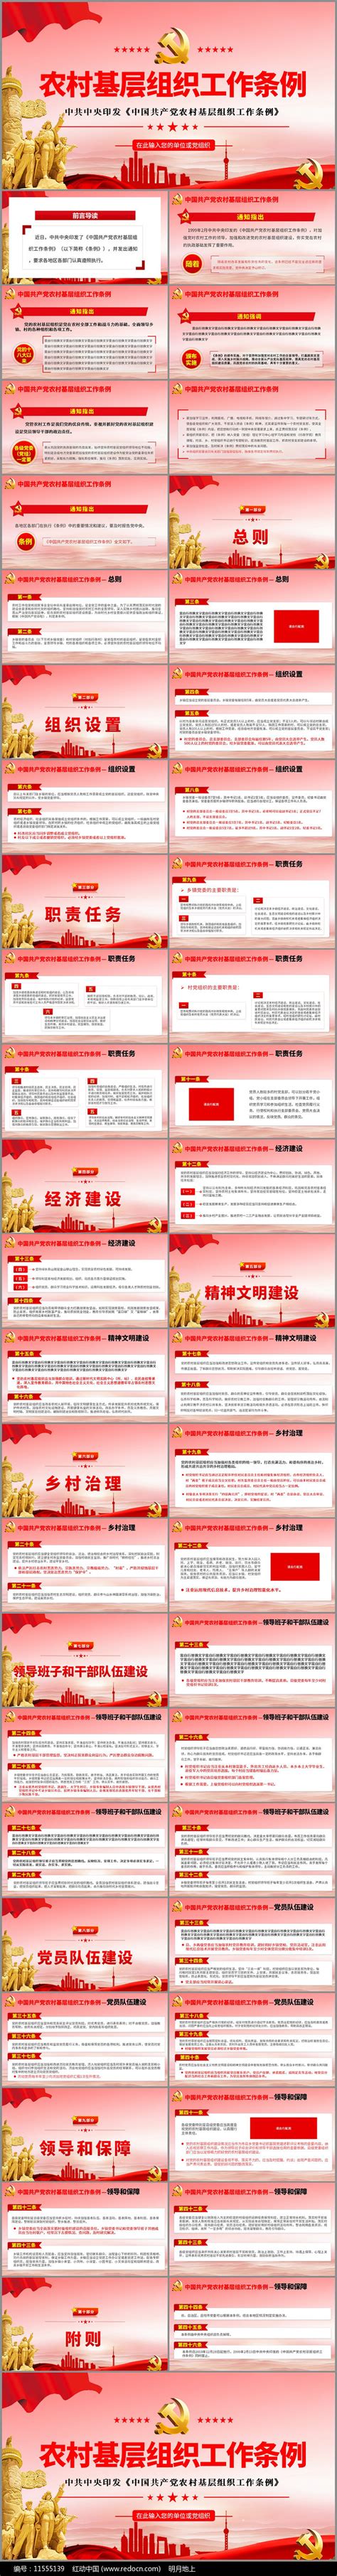 农村基层组织工作条例解读PPT图片_PPT_编号11555139_红动中国